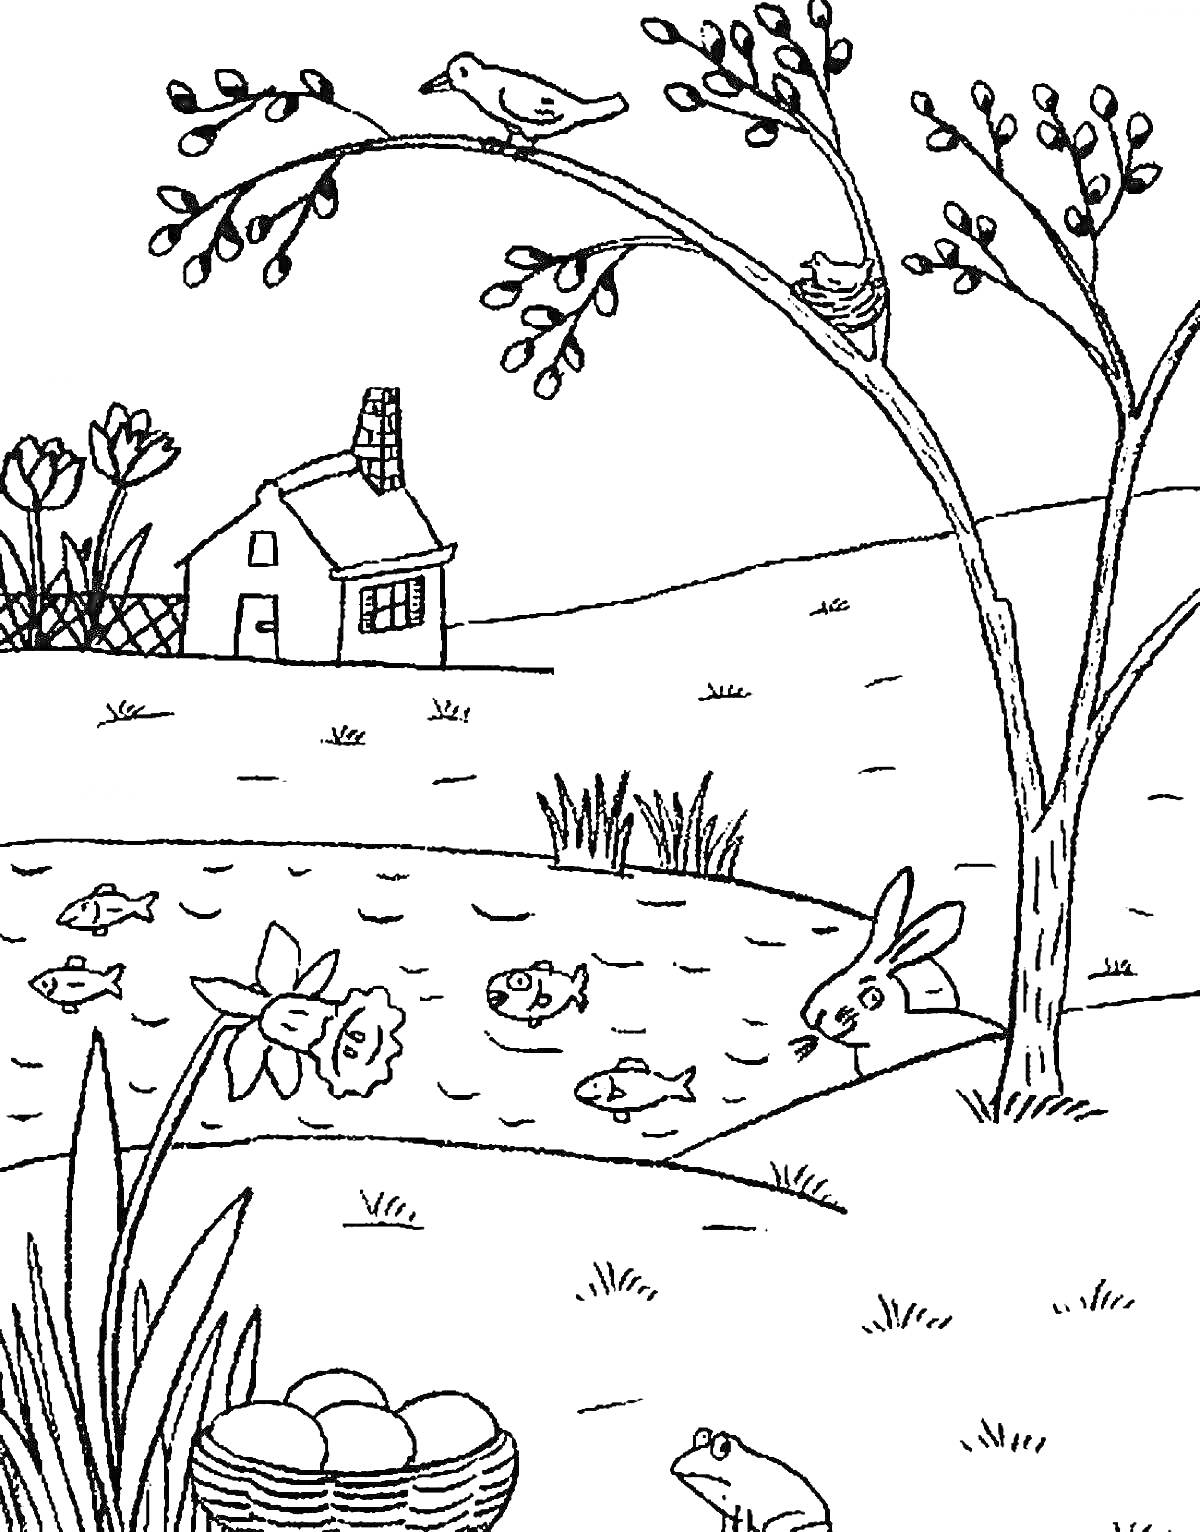 Раскраска Весенний пейзаж с домом, птицами на дереве, лягушками, зайцем, водоемом с рыбками и цветущими нарциссами